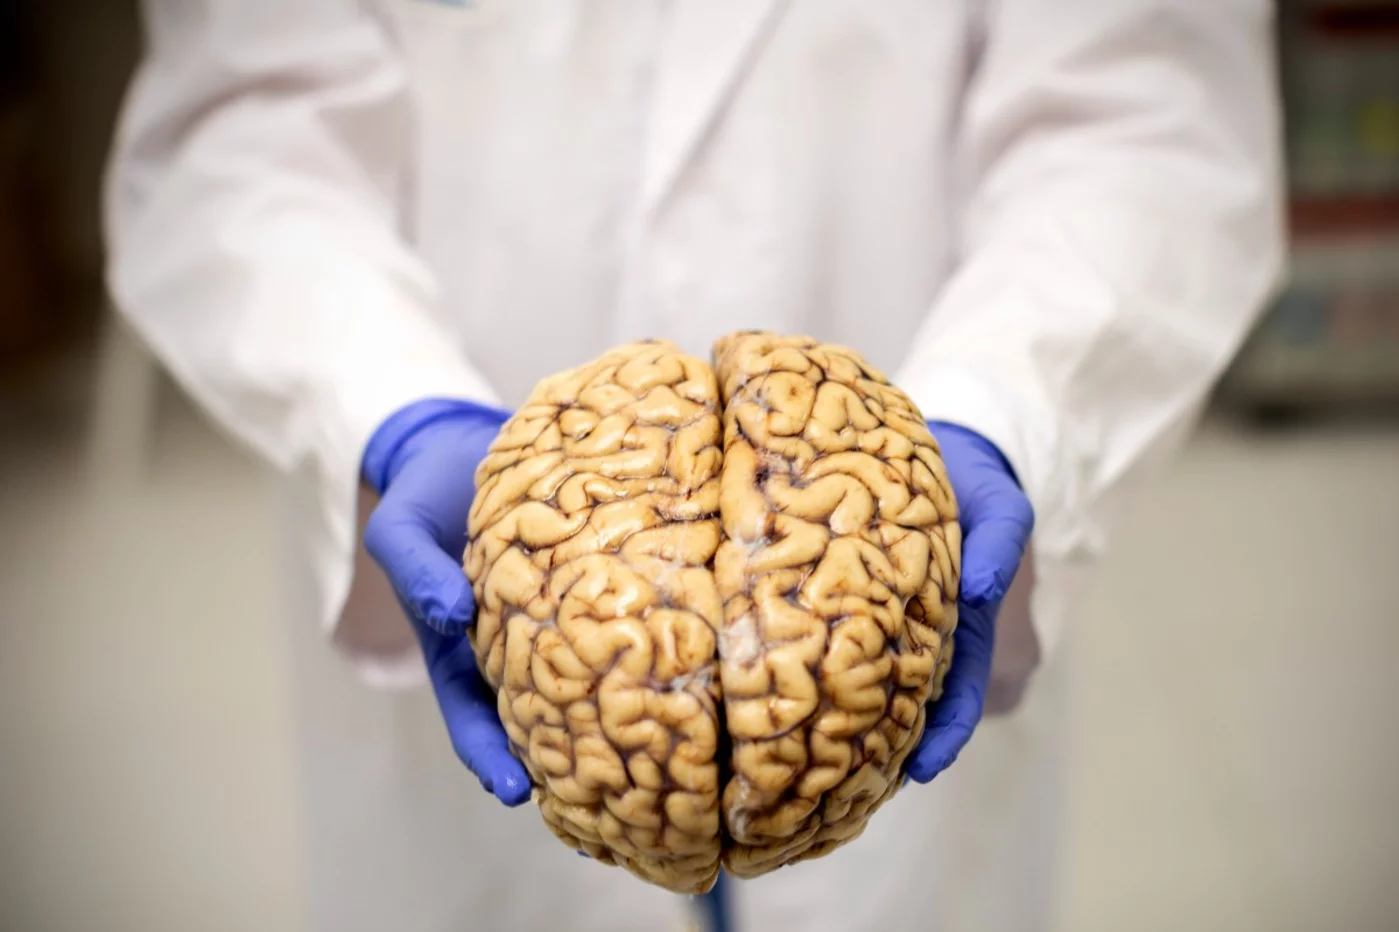 Banco de Cerebros de la fundación CIEN, donde llevan a cabo estudios sobre el Alzheimer. En la imagen, uno de los cerebros humanos que se conserva en el banco. Foto: ALBERTO DI LOLLI.